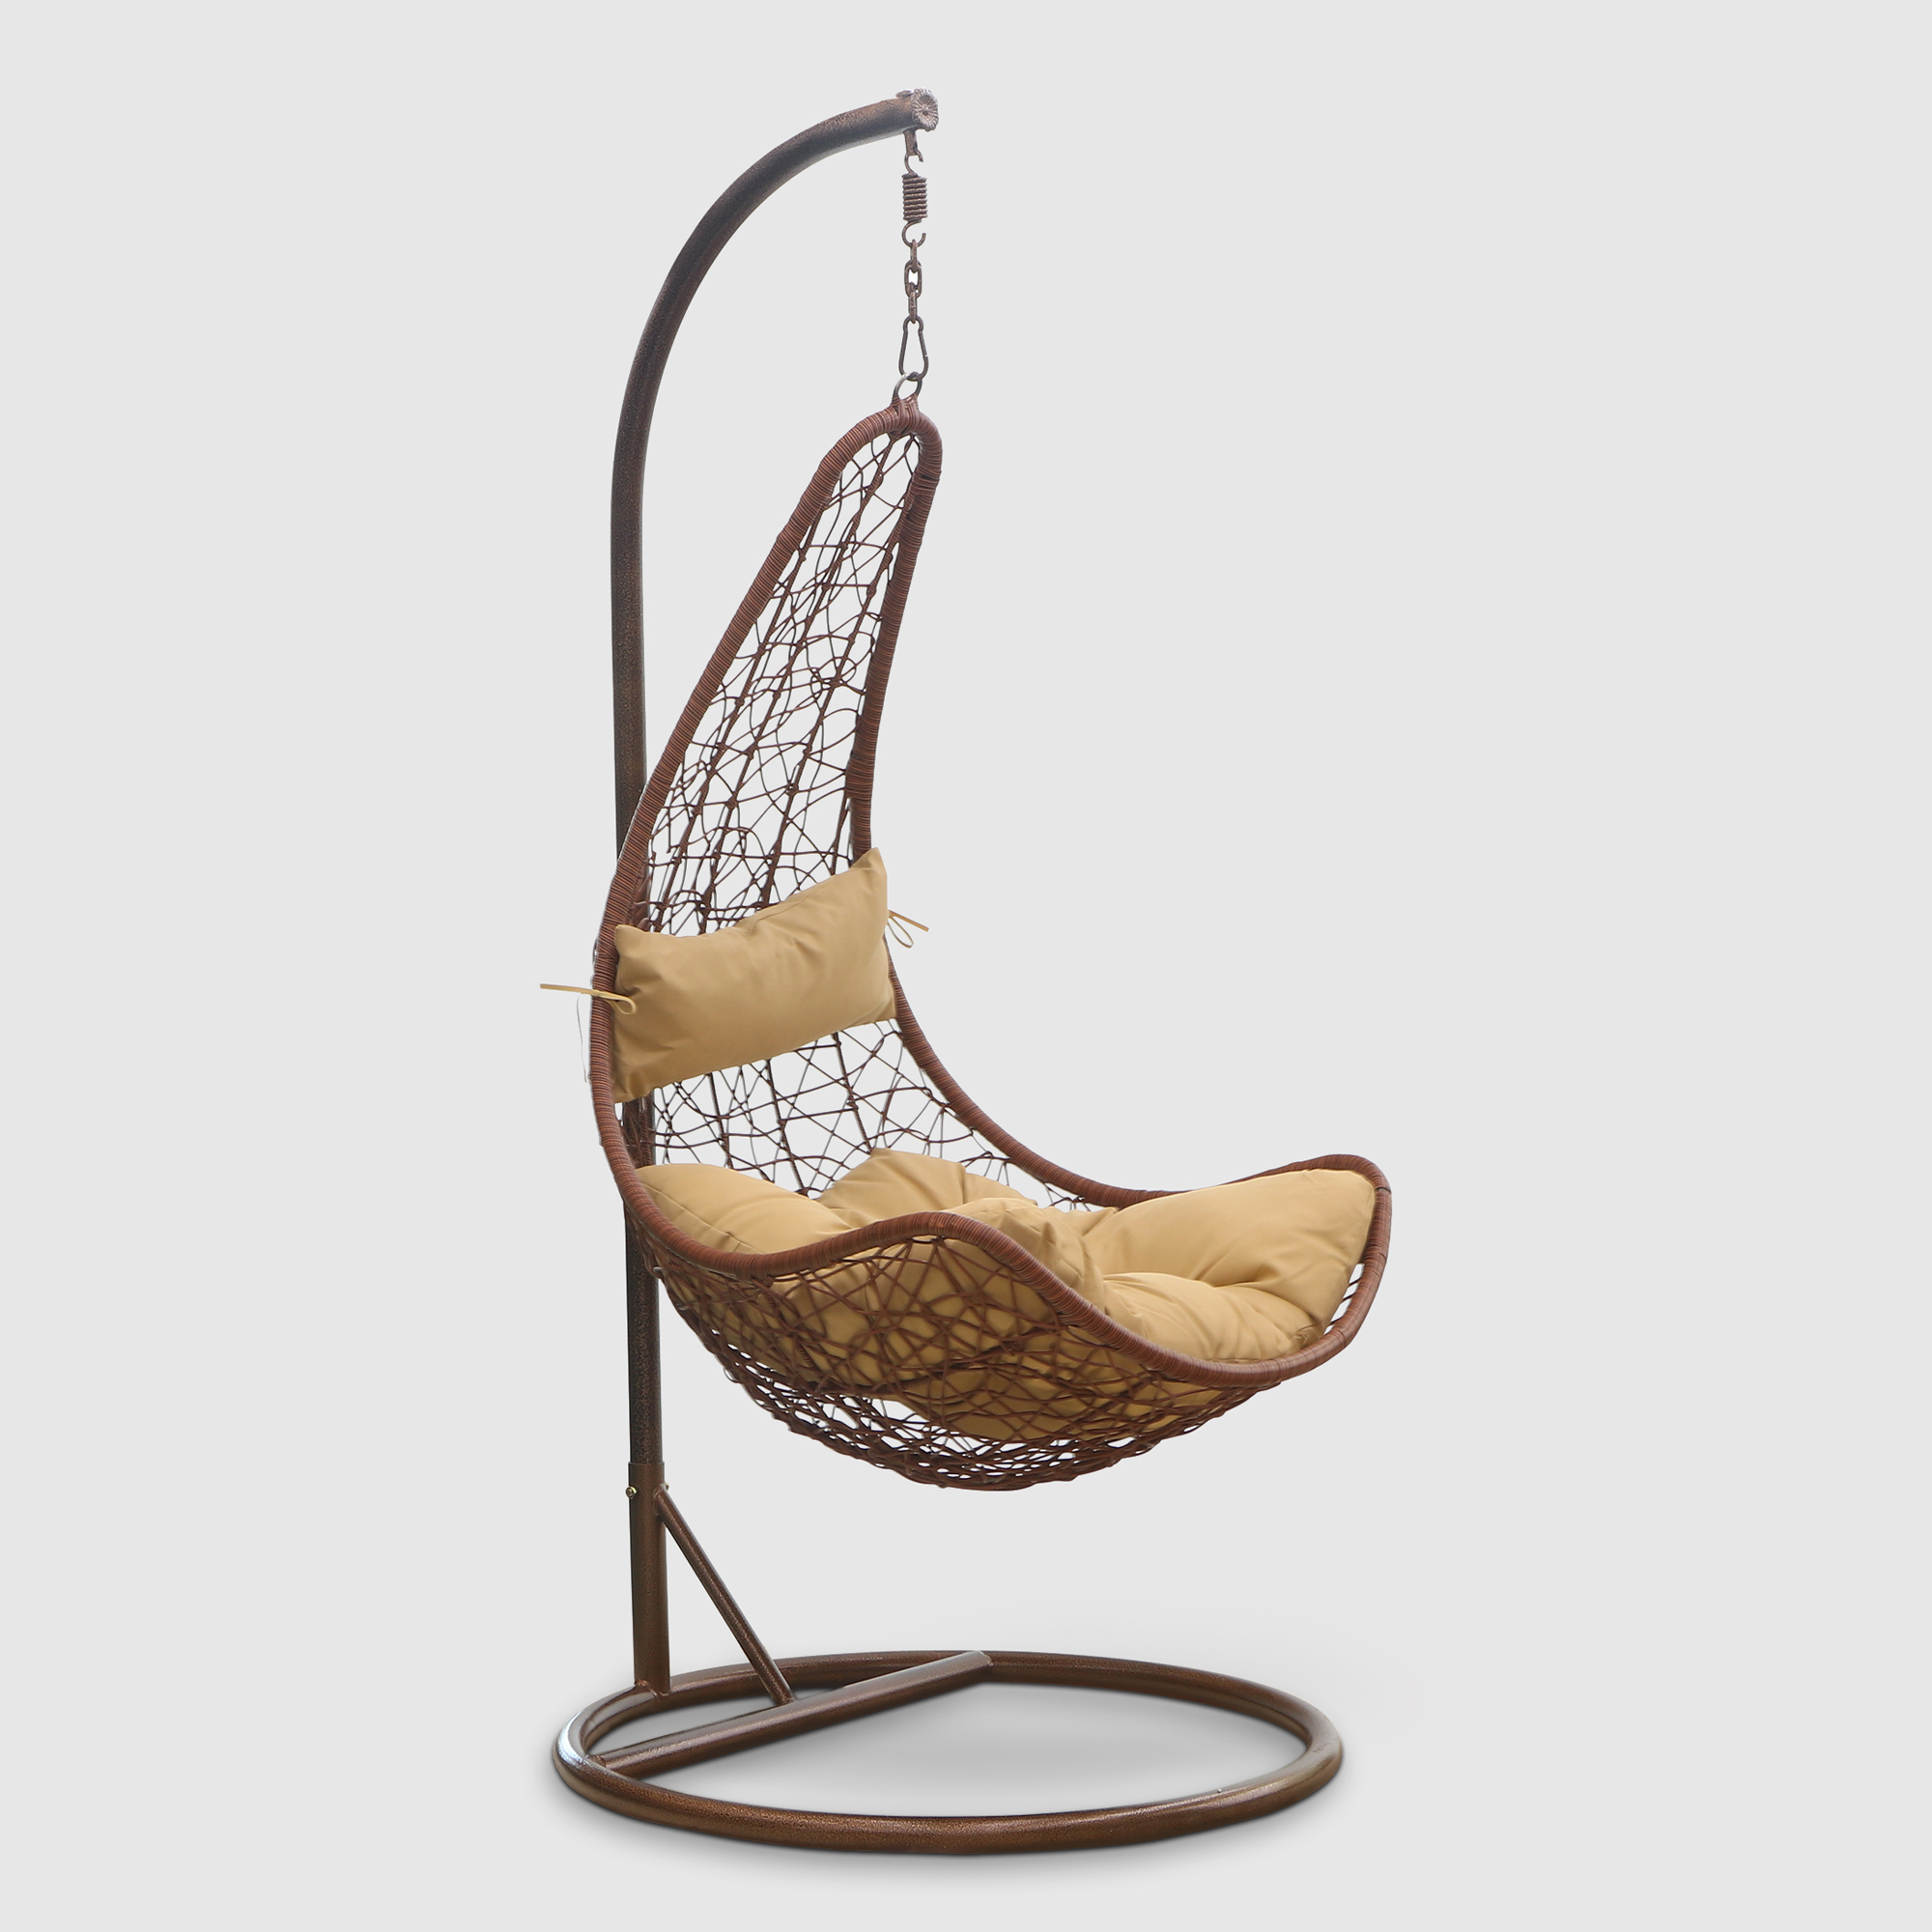 Кресло подвесное Art and craft furniture коричневое, цвет коричневый